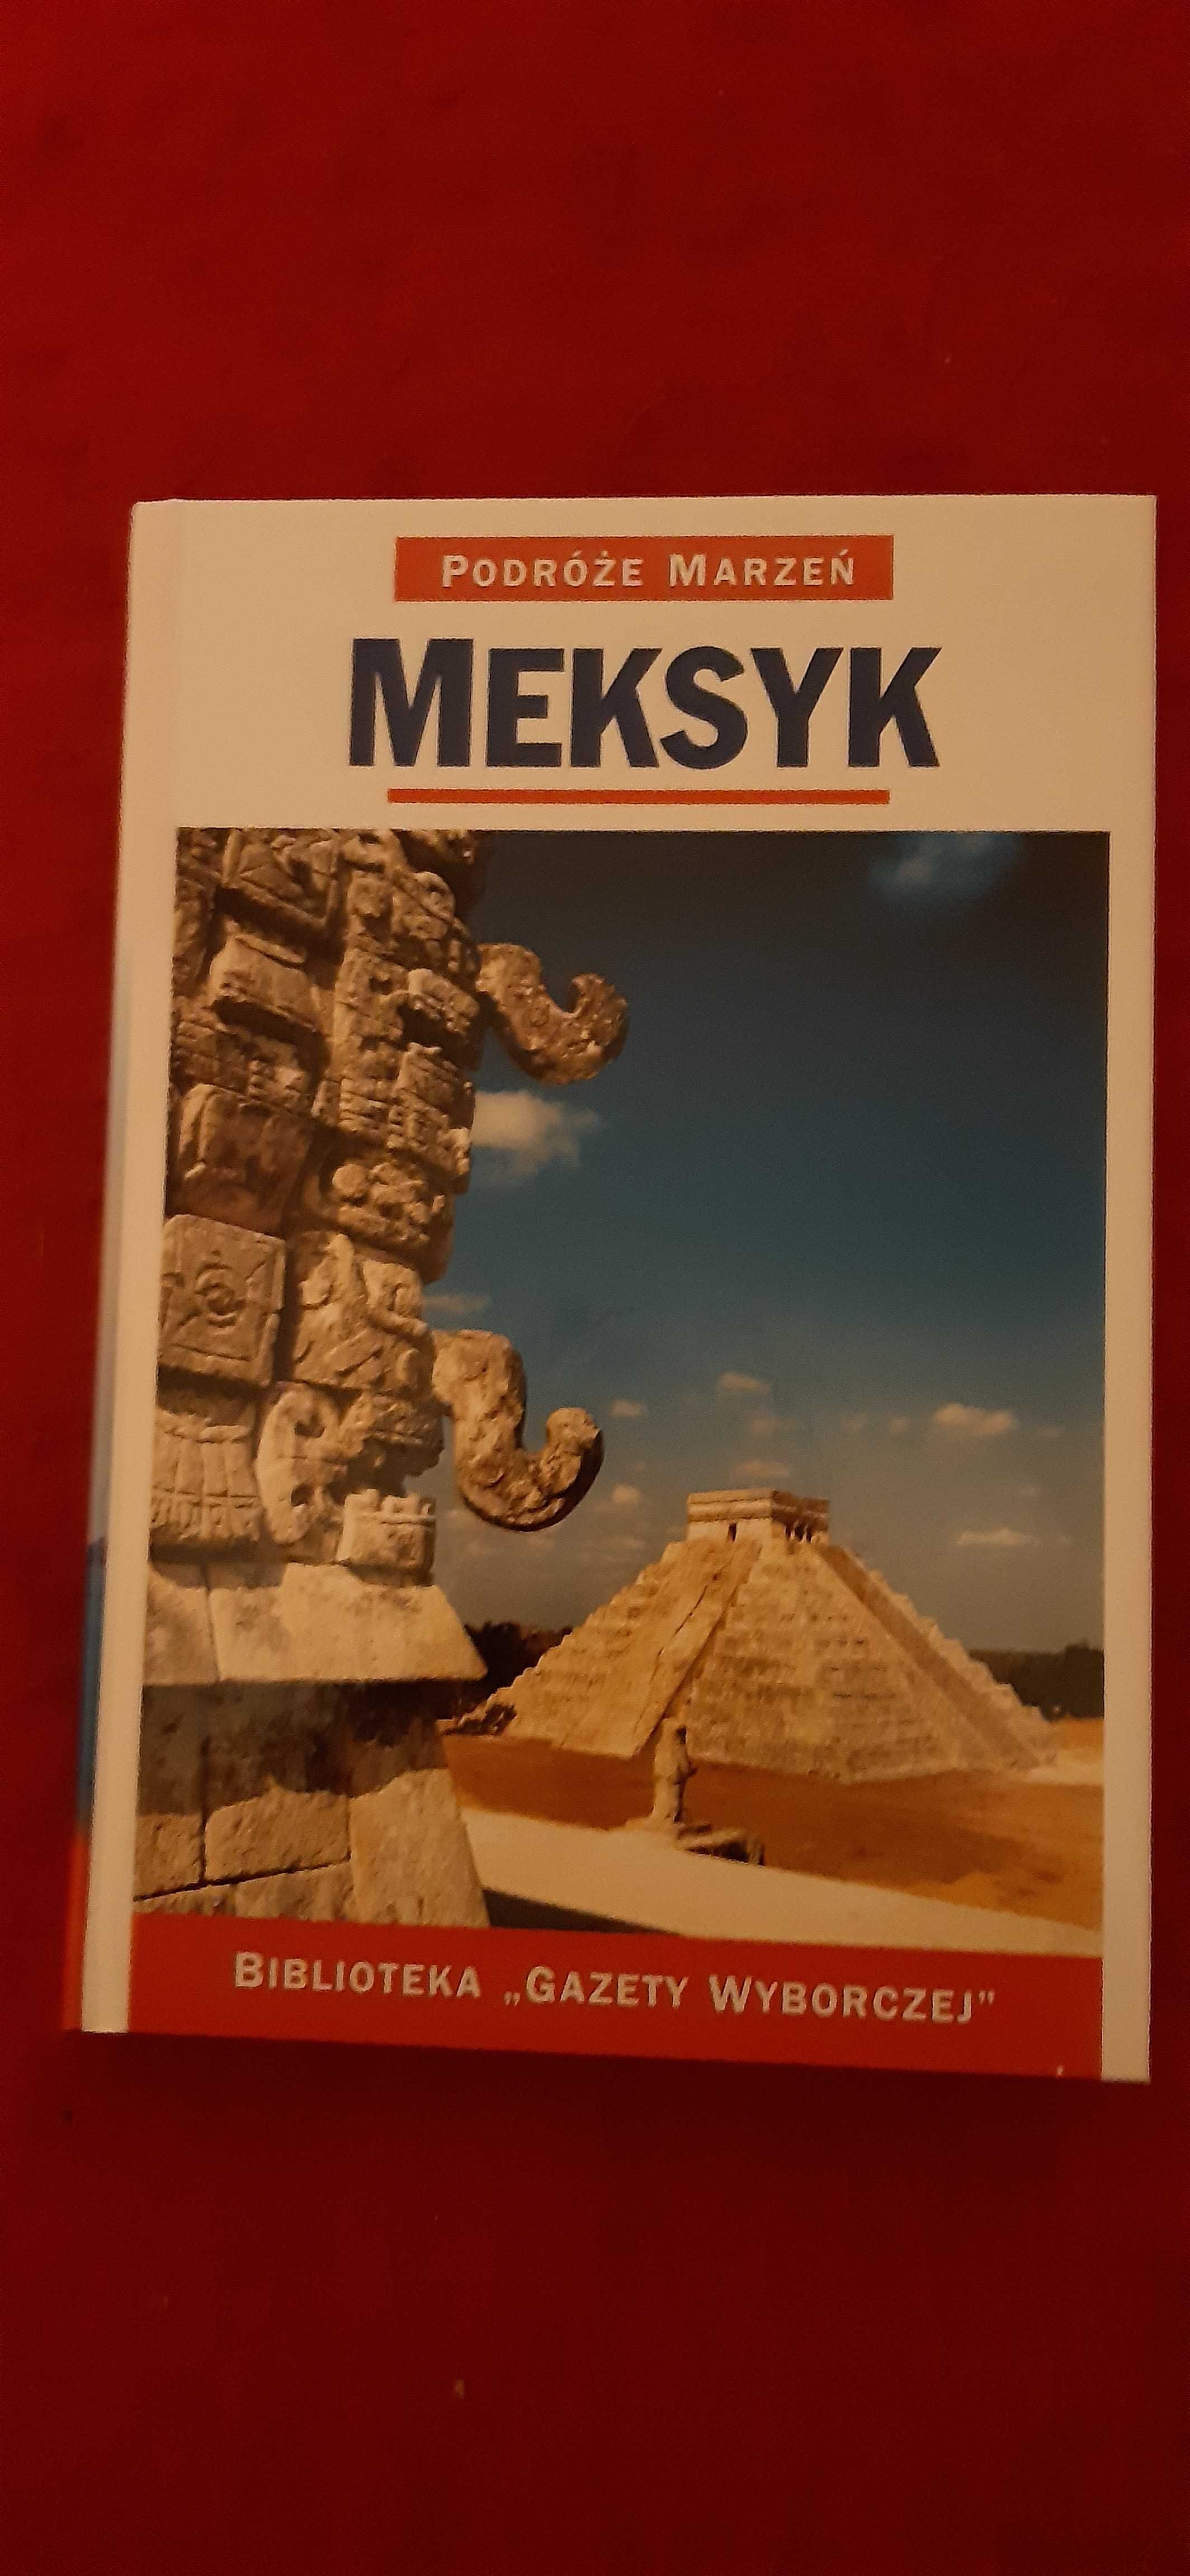 Meksyk-przewodnik z cyklu "Podróże marzeń"